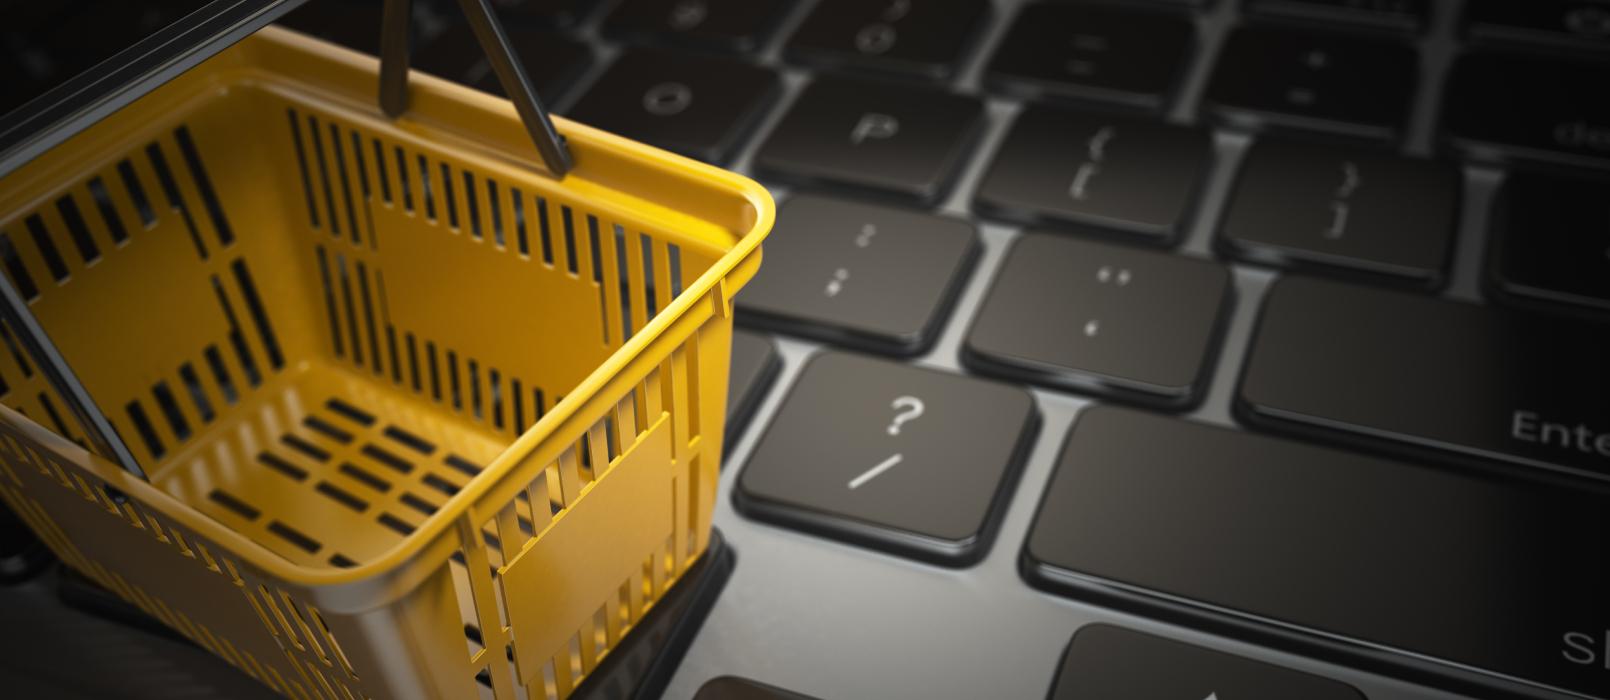 Czym jest e-commerce w praktyce? Definicja handlu elektronicznego w pigułce.